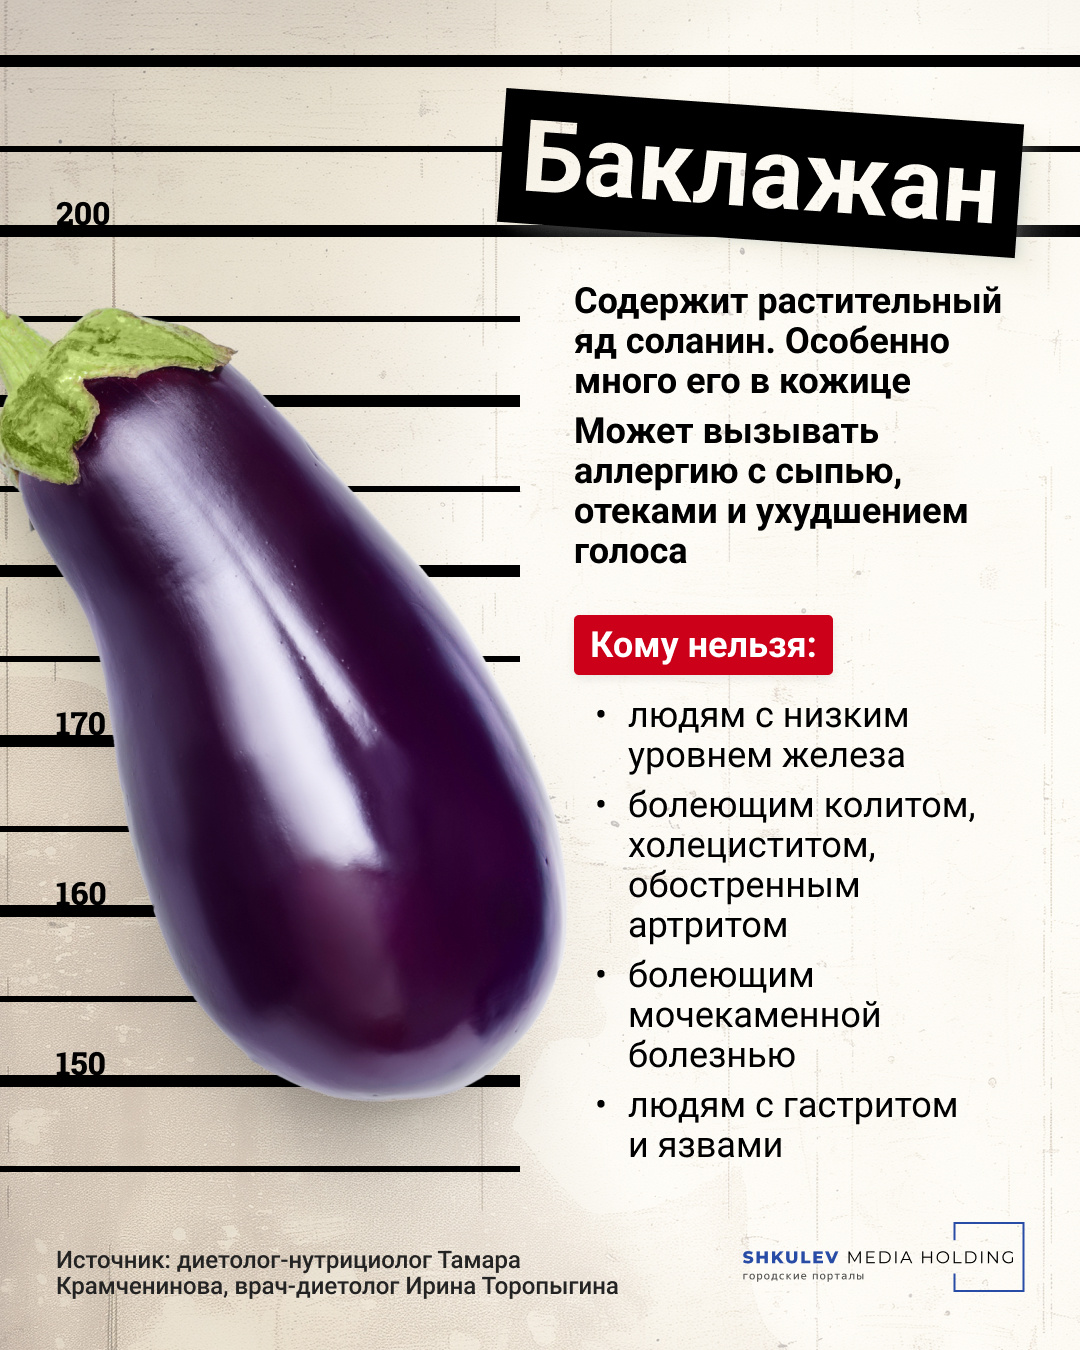 Баклажан арестован по статье «содержание соланина»